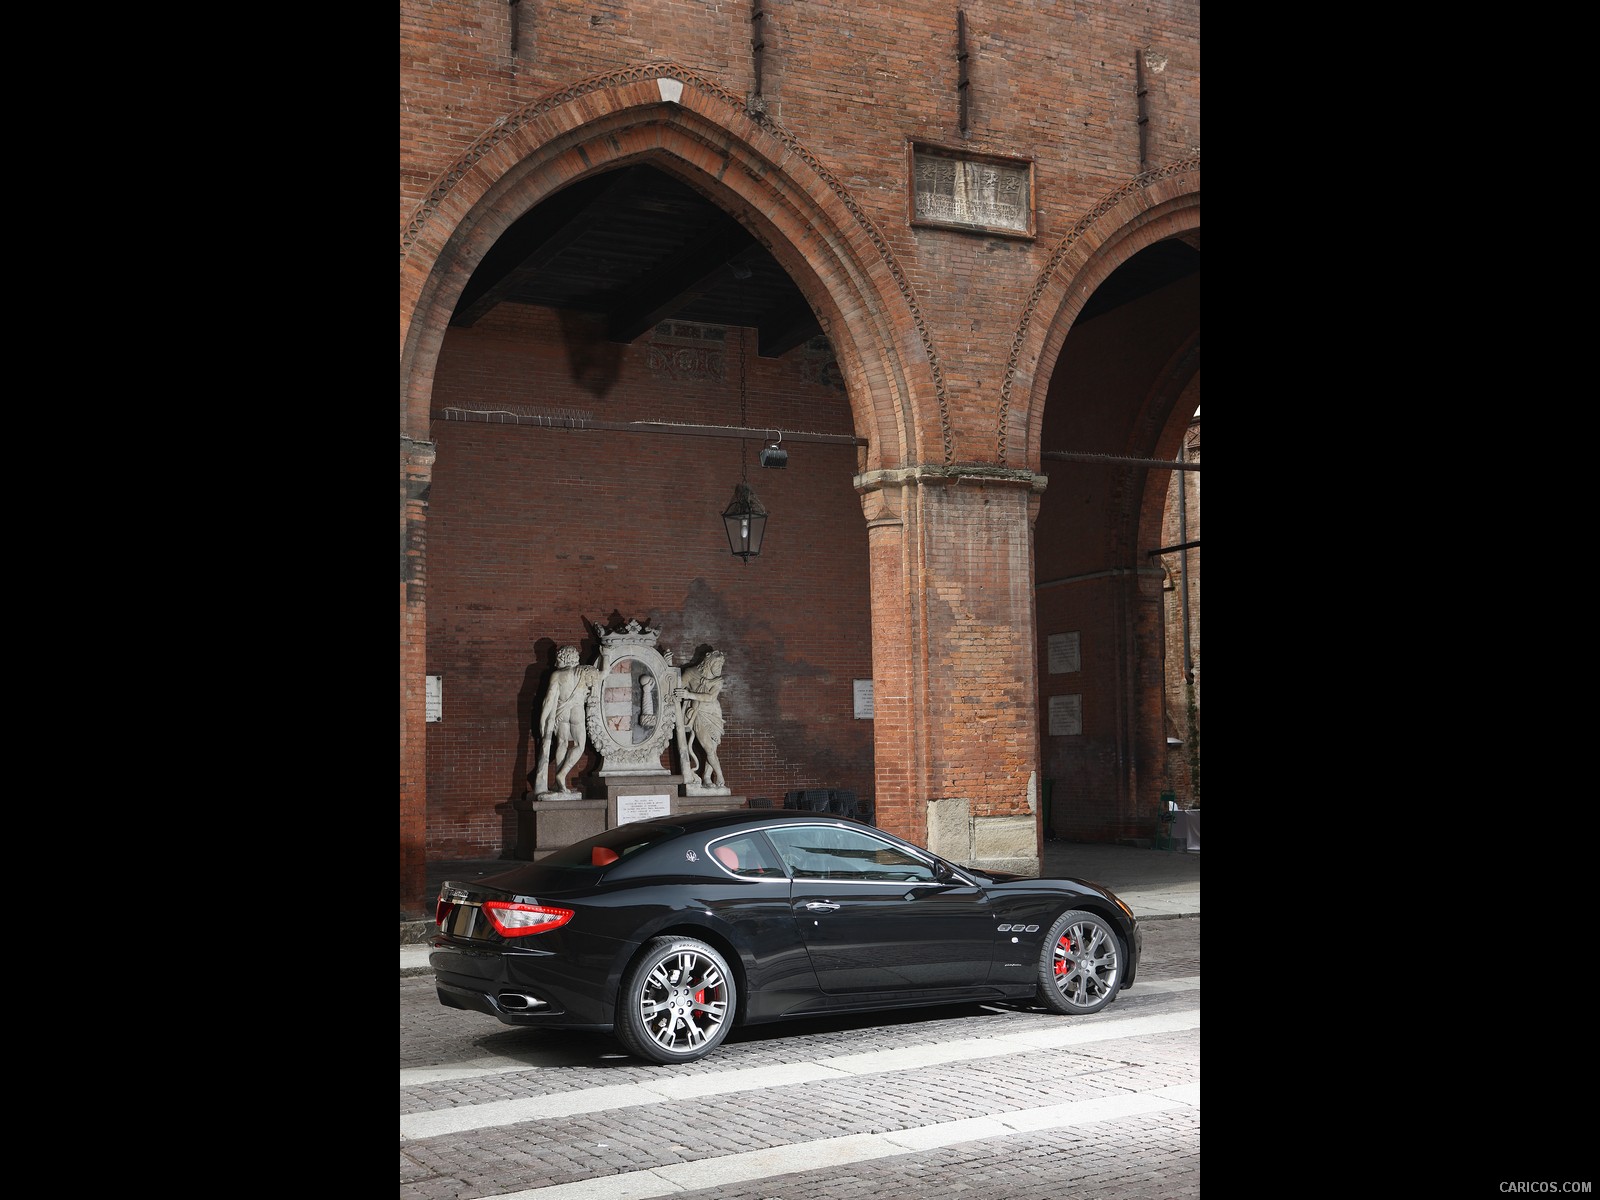 Maserati GranTurismo S (2009)  - Side, #4 of 40